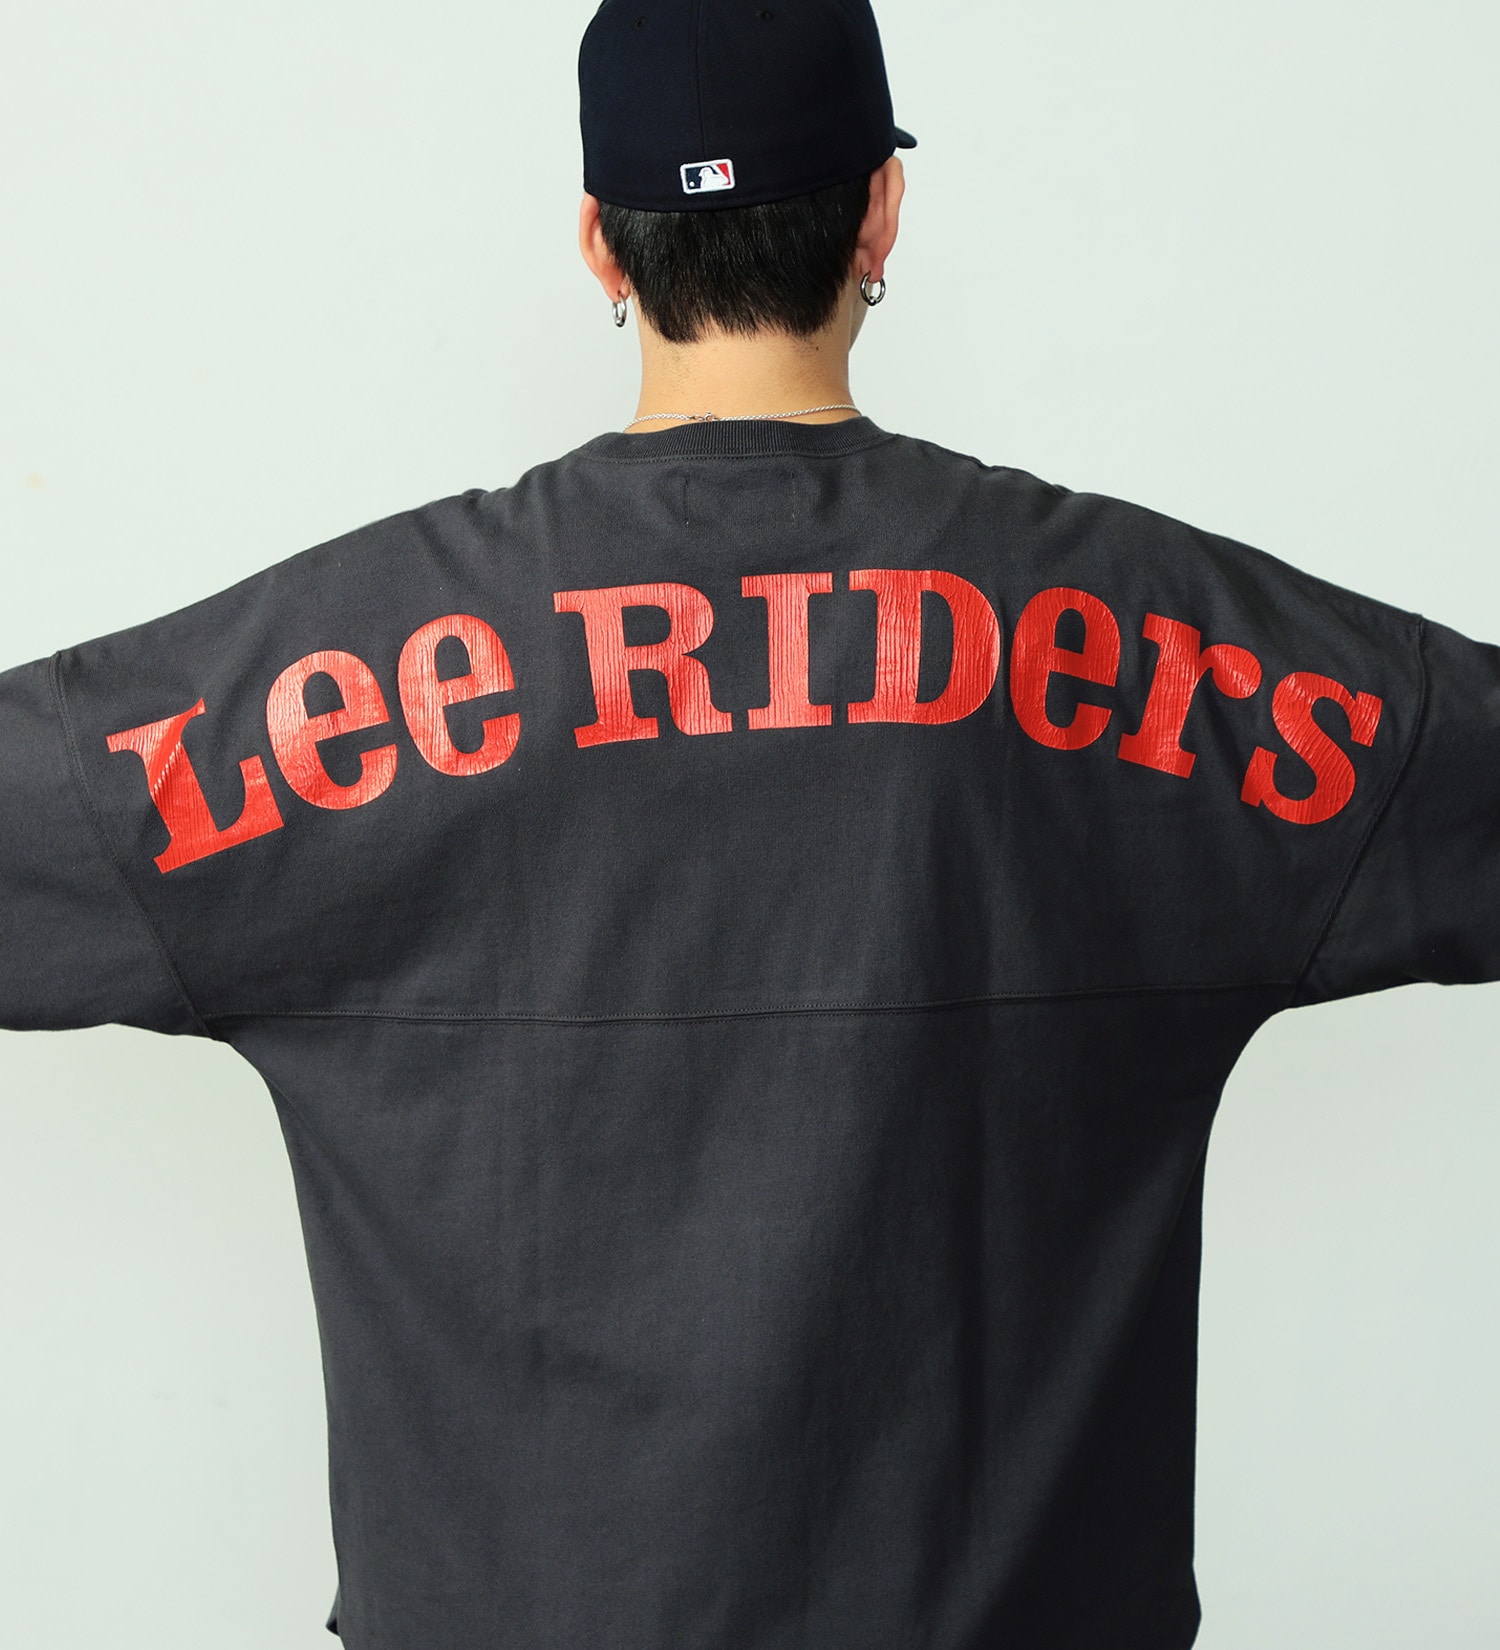 Lee(リー)のバックアーチ ショートスリーブTee|トップス/Tシャツ/カットソー/メンズ|チャコールグレー